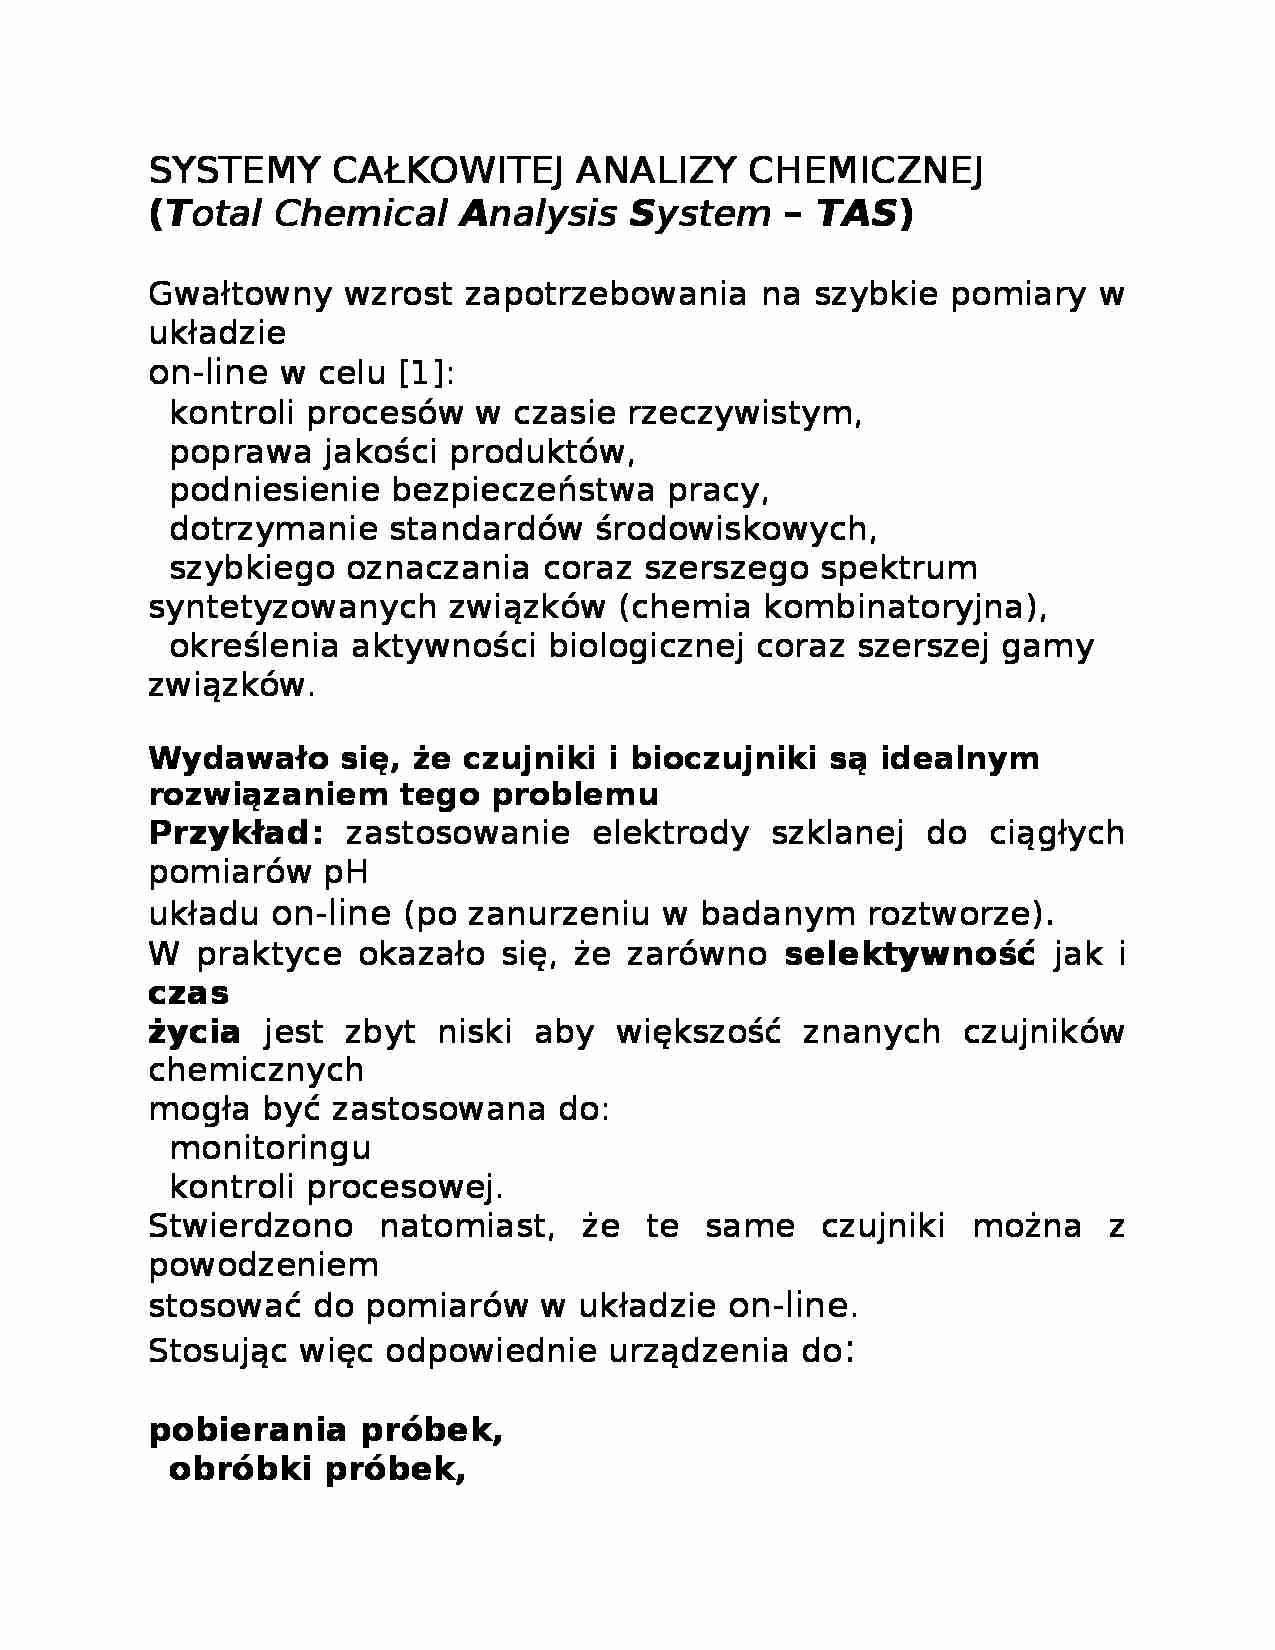 System całkowitej analizy chemicznej - omówienie - strona 1